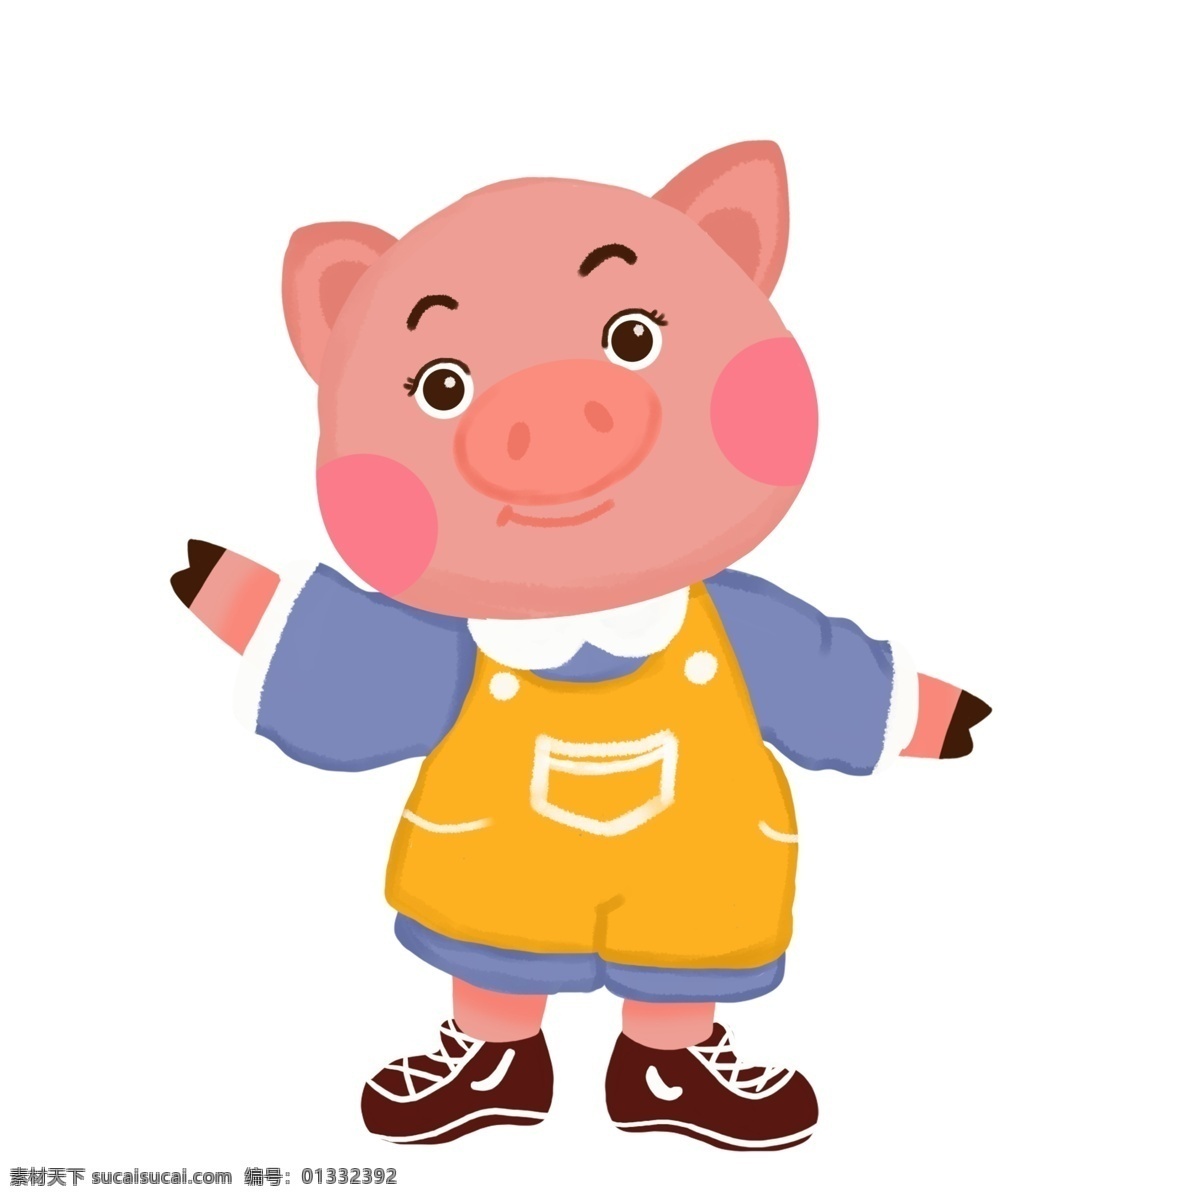 2019 宠物 拜年 猪 插画 喜庆 元旦 春节 小猪 开心 恭喜 手绘 新年 跨年 除夕 免抠猪 猪年